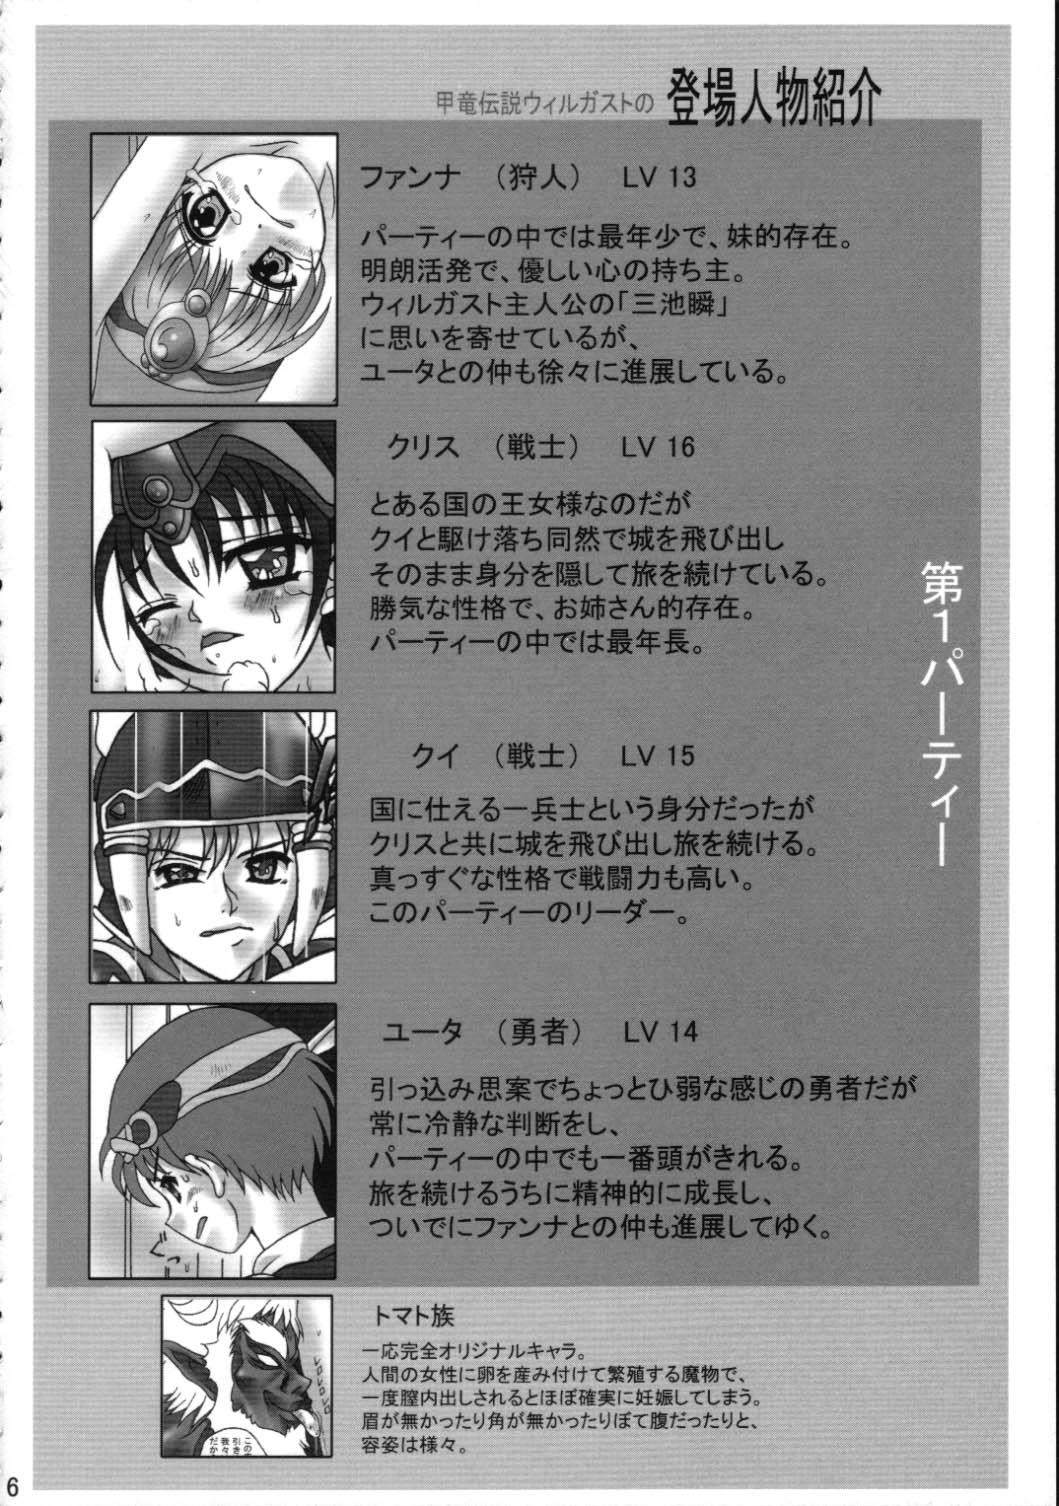 Art Toraware no Shoujo - Kouryuu densetsu villgust Sucking Dick - Page 5